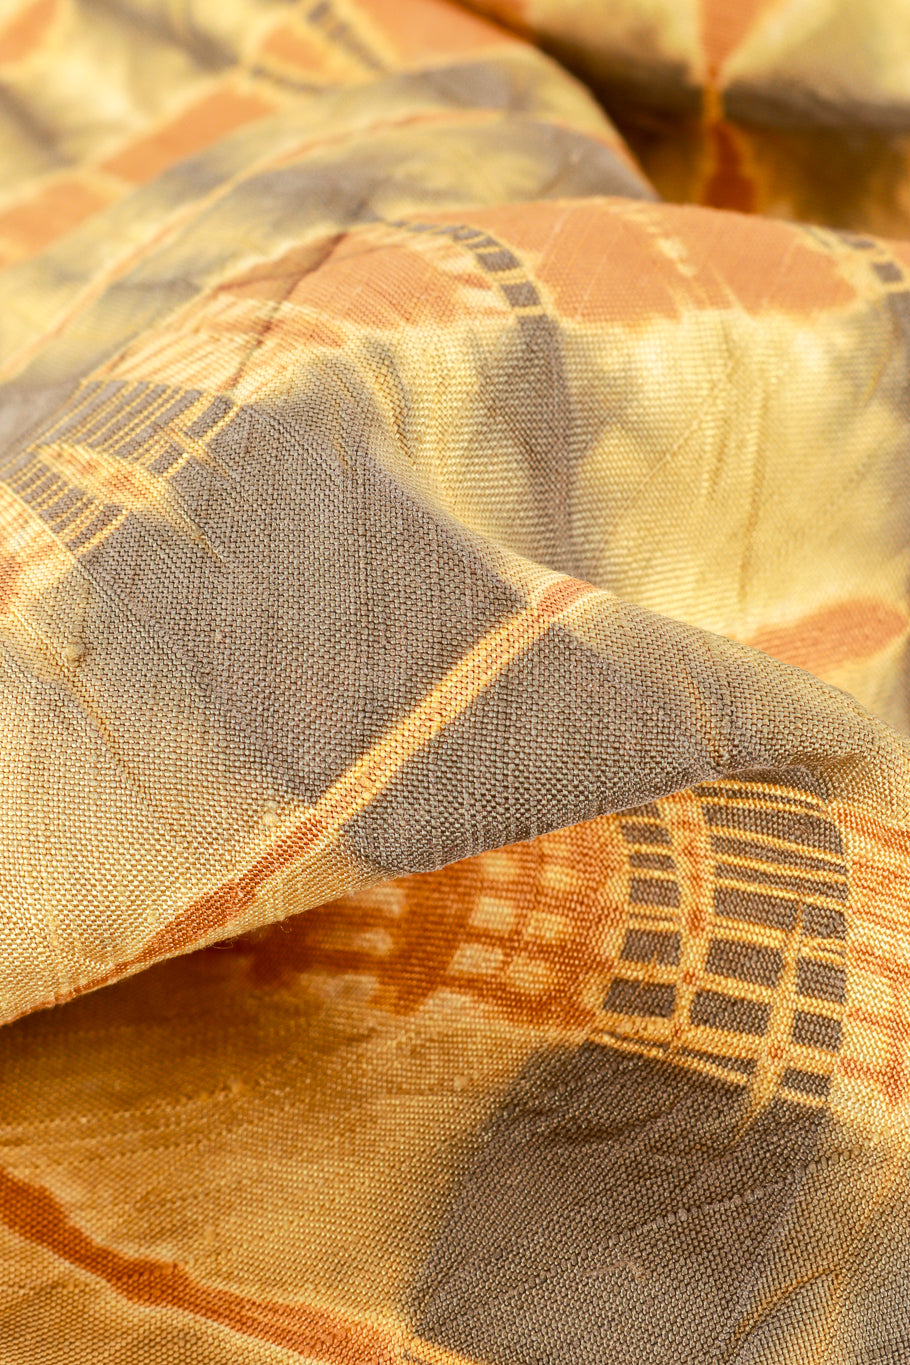 Vintage Shibori Tie Dye Kimono fabric closeup @recess la